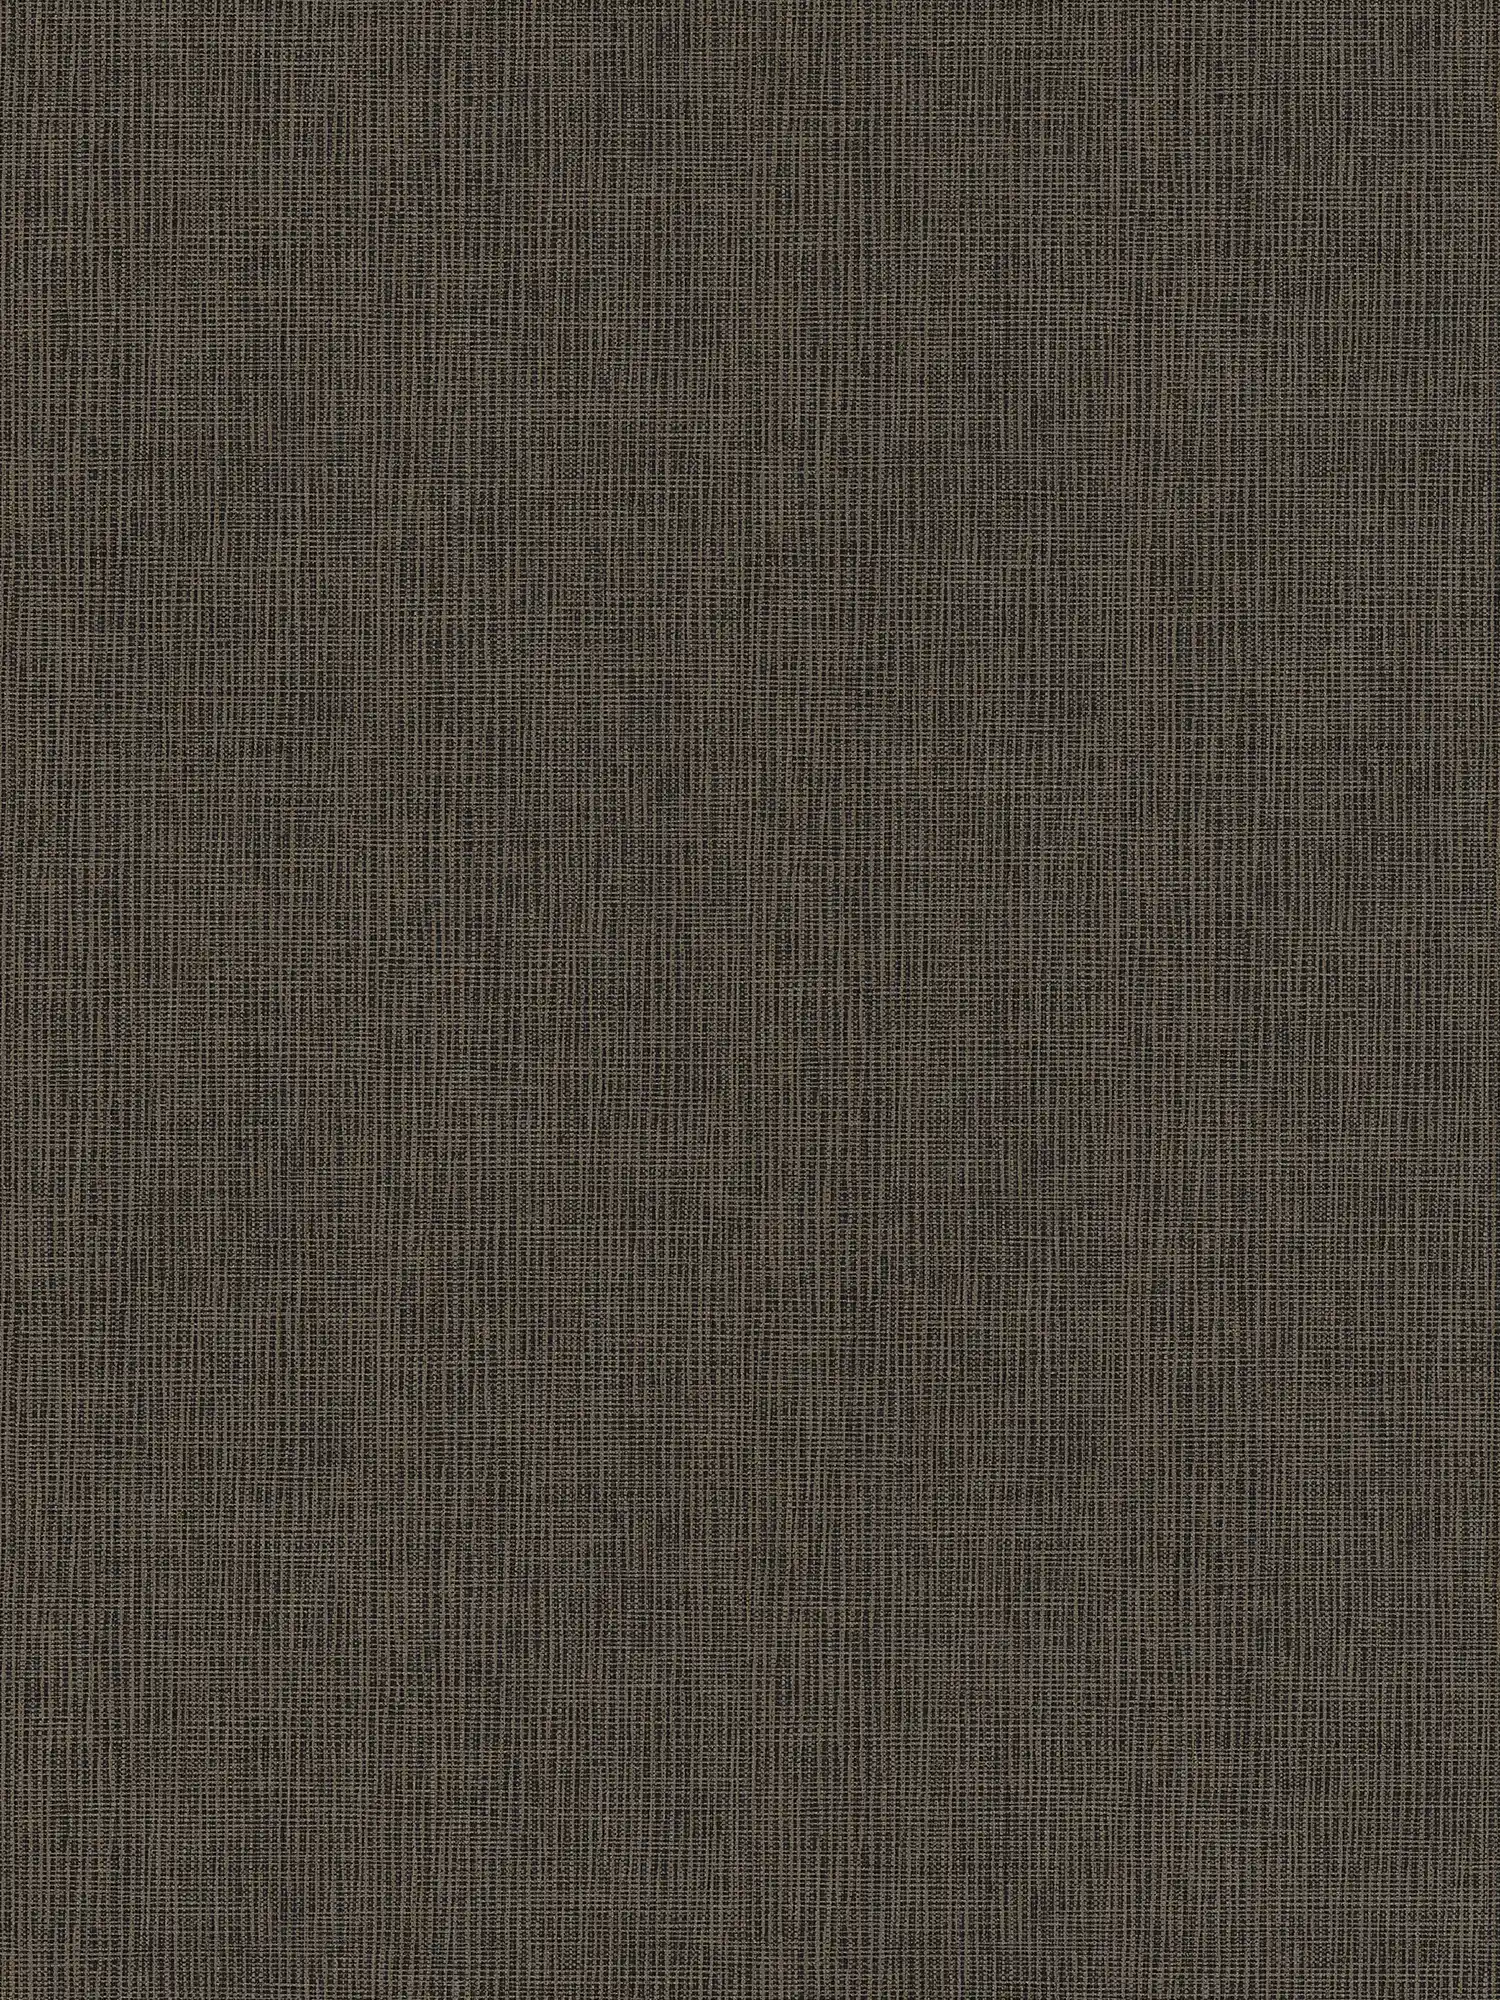 Papel pintado no tejido marrón con detalles grises y dorados - azul, gris, plata
